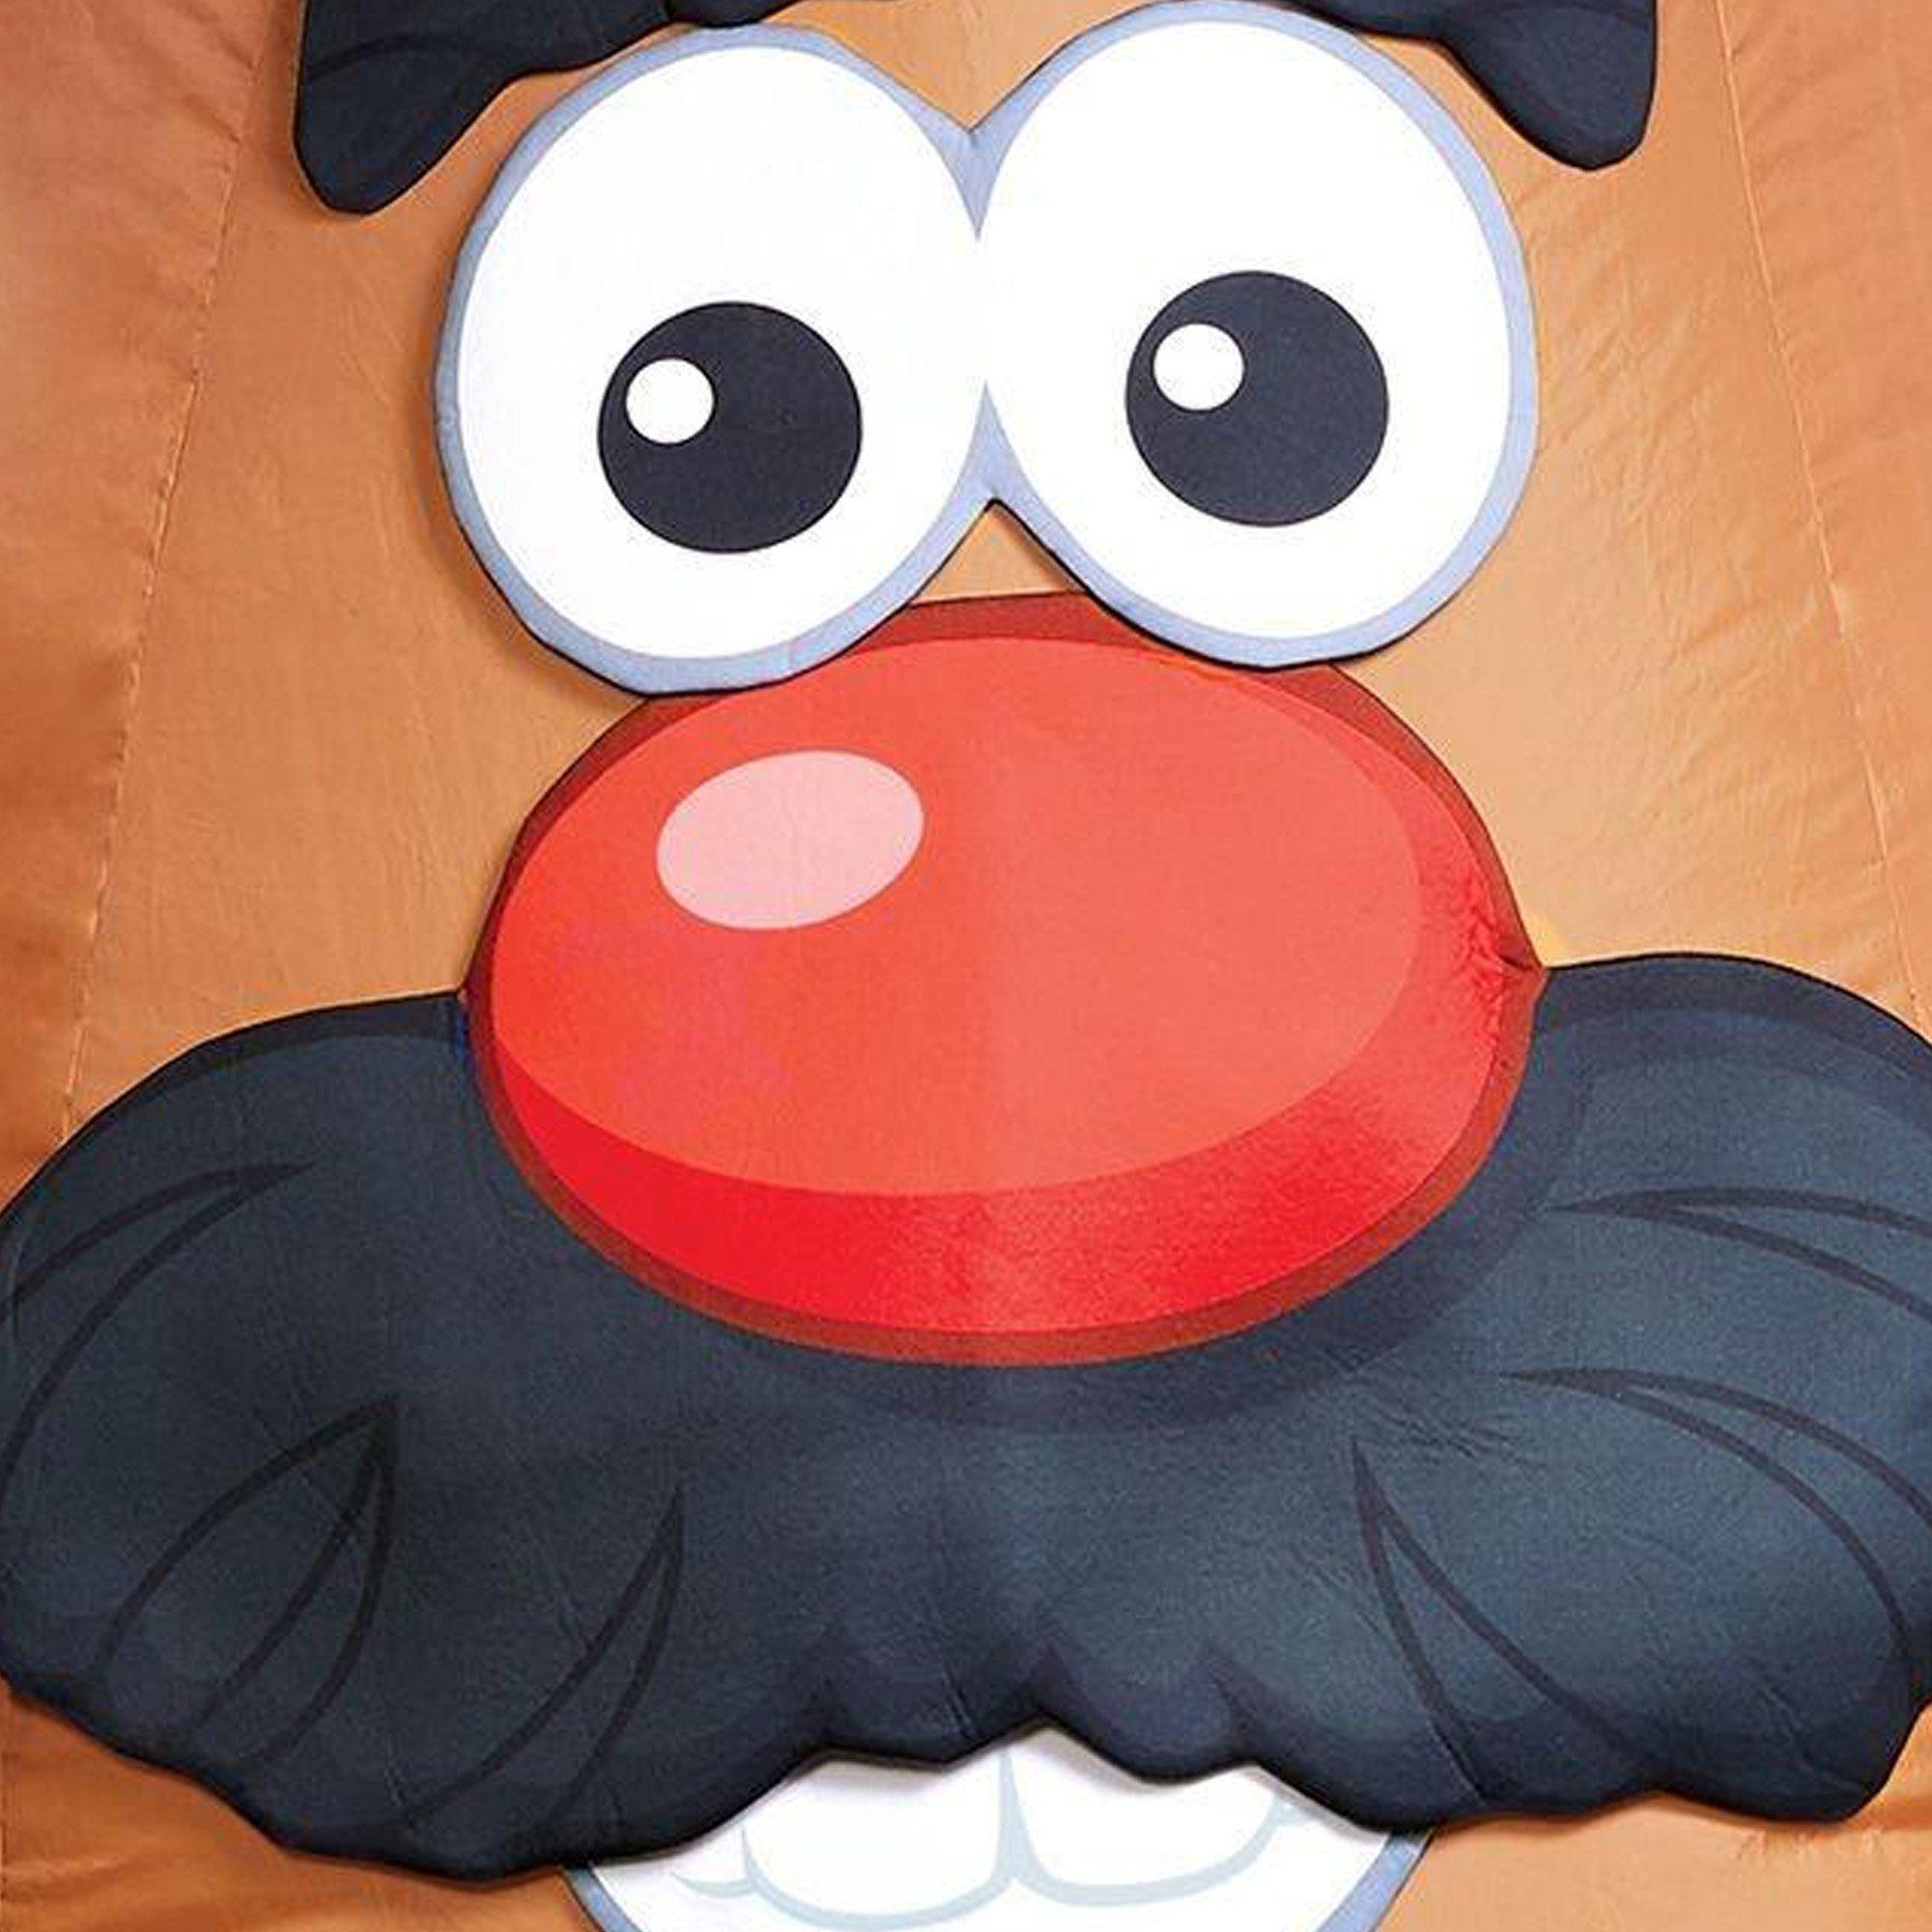 Adult Inflatable Mr. Potato Head Costume